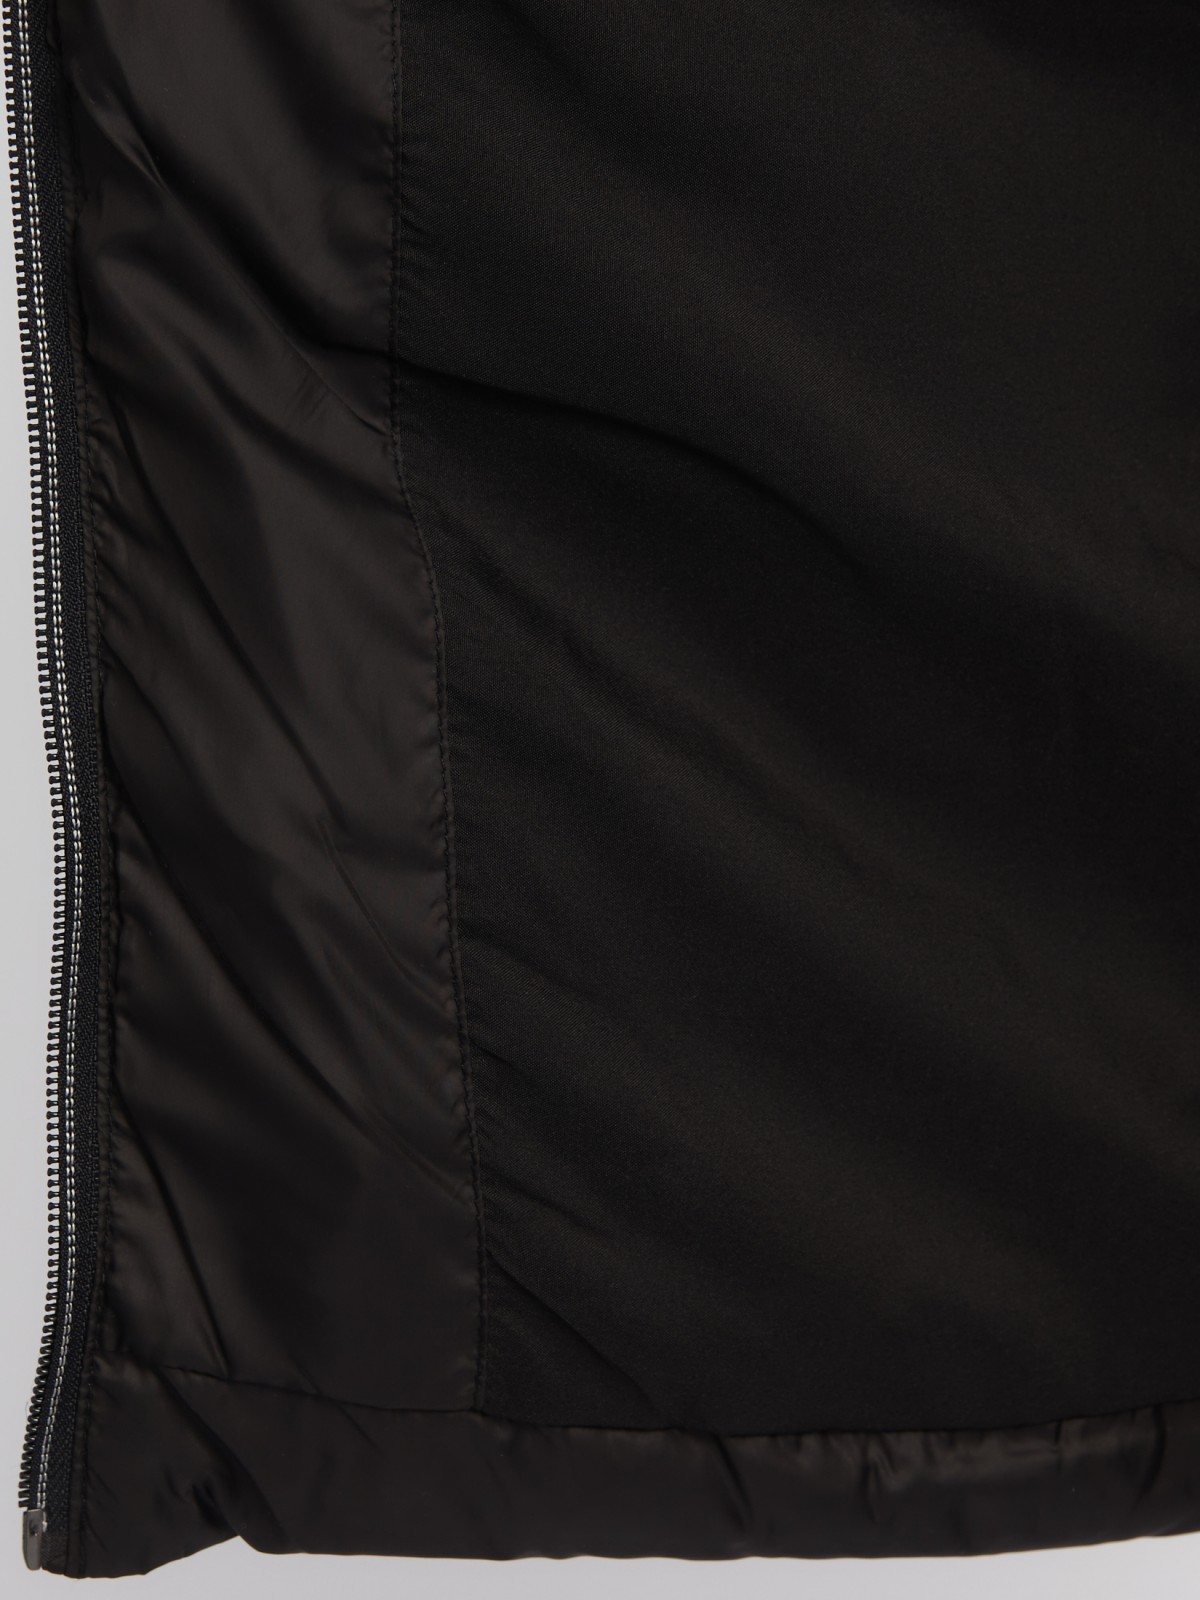 Утеплённая короткая куртка на молнии с воротником zolla 024135112154, цвет черный, размер S - фото 5